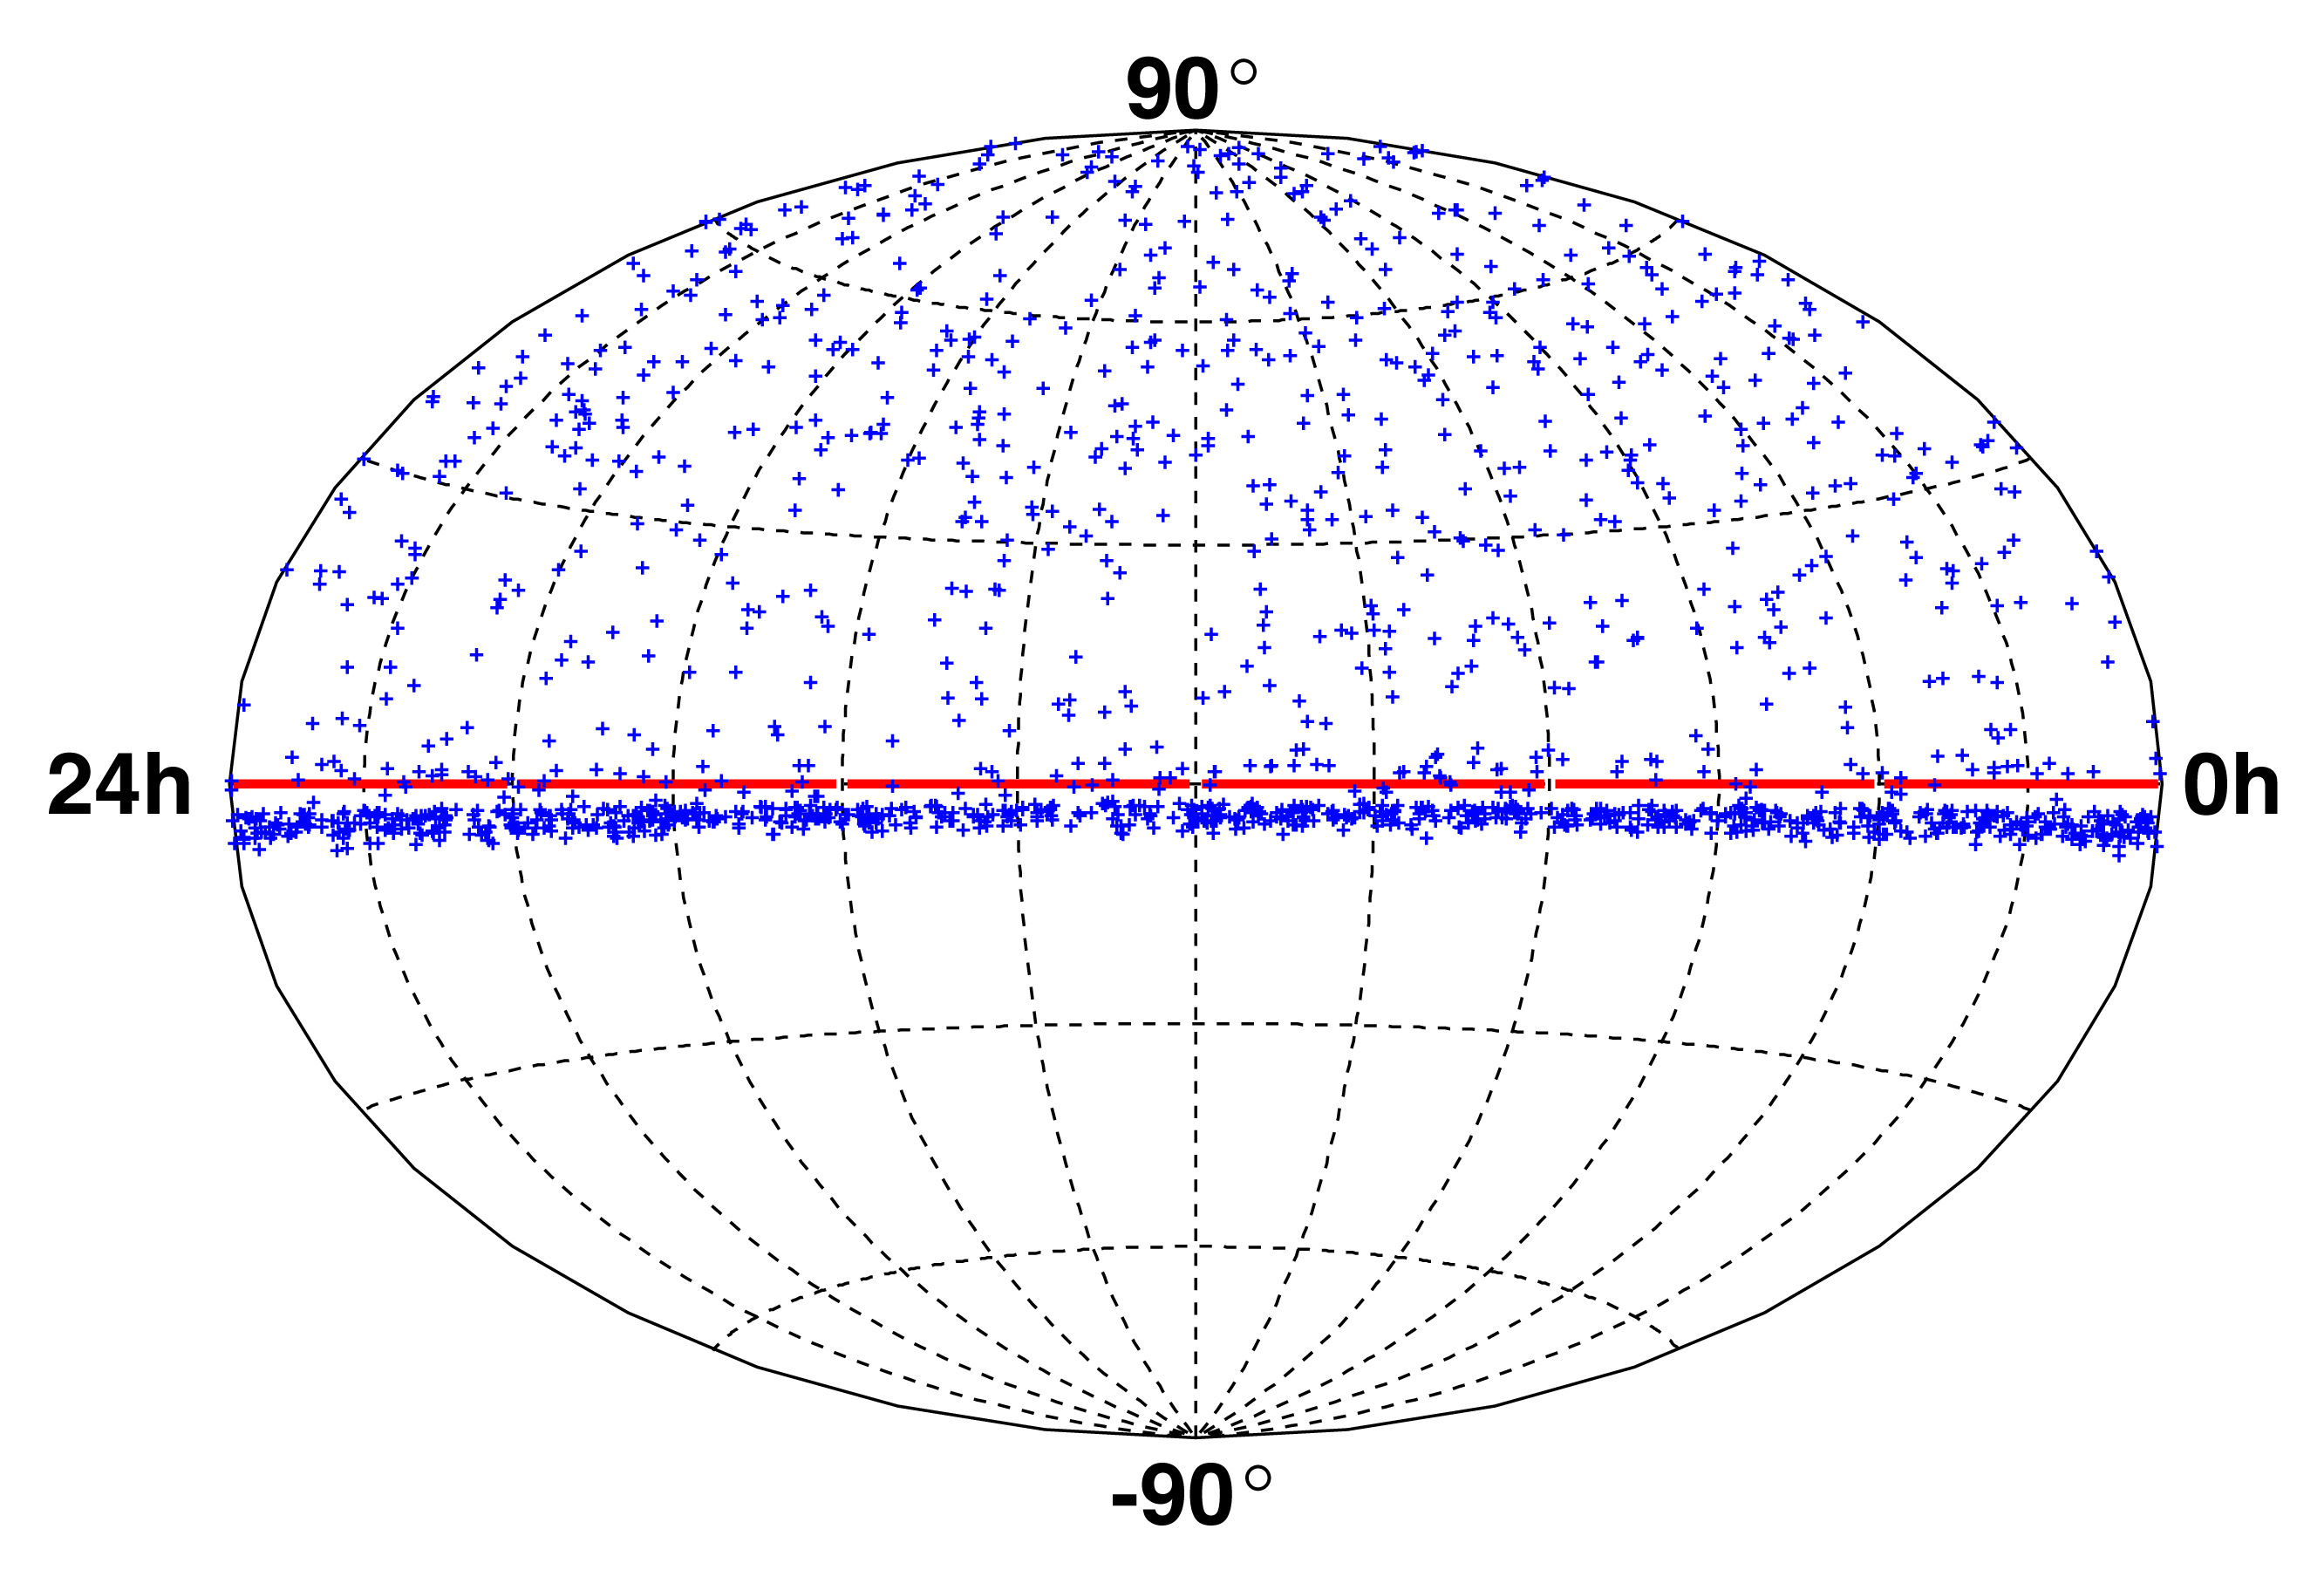 First neutrino sky plot from AMANDA